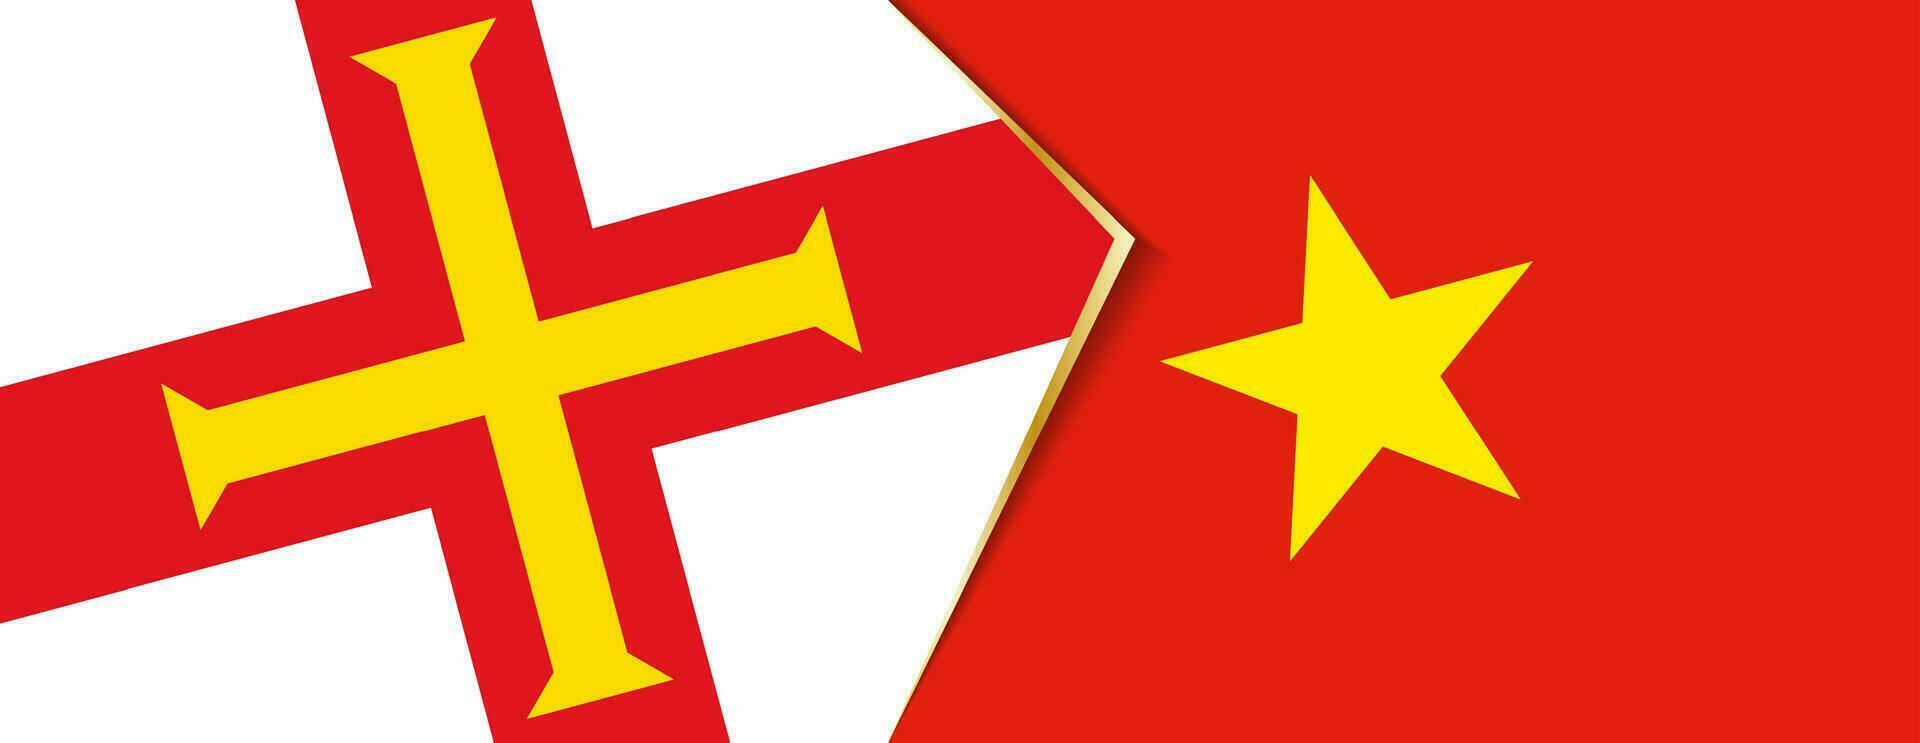 Guernsey und Vietnam Flaggen, zwei Vektor Flaggen.